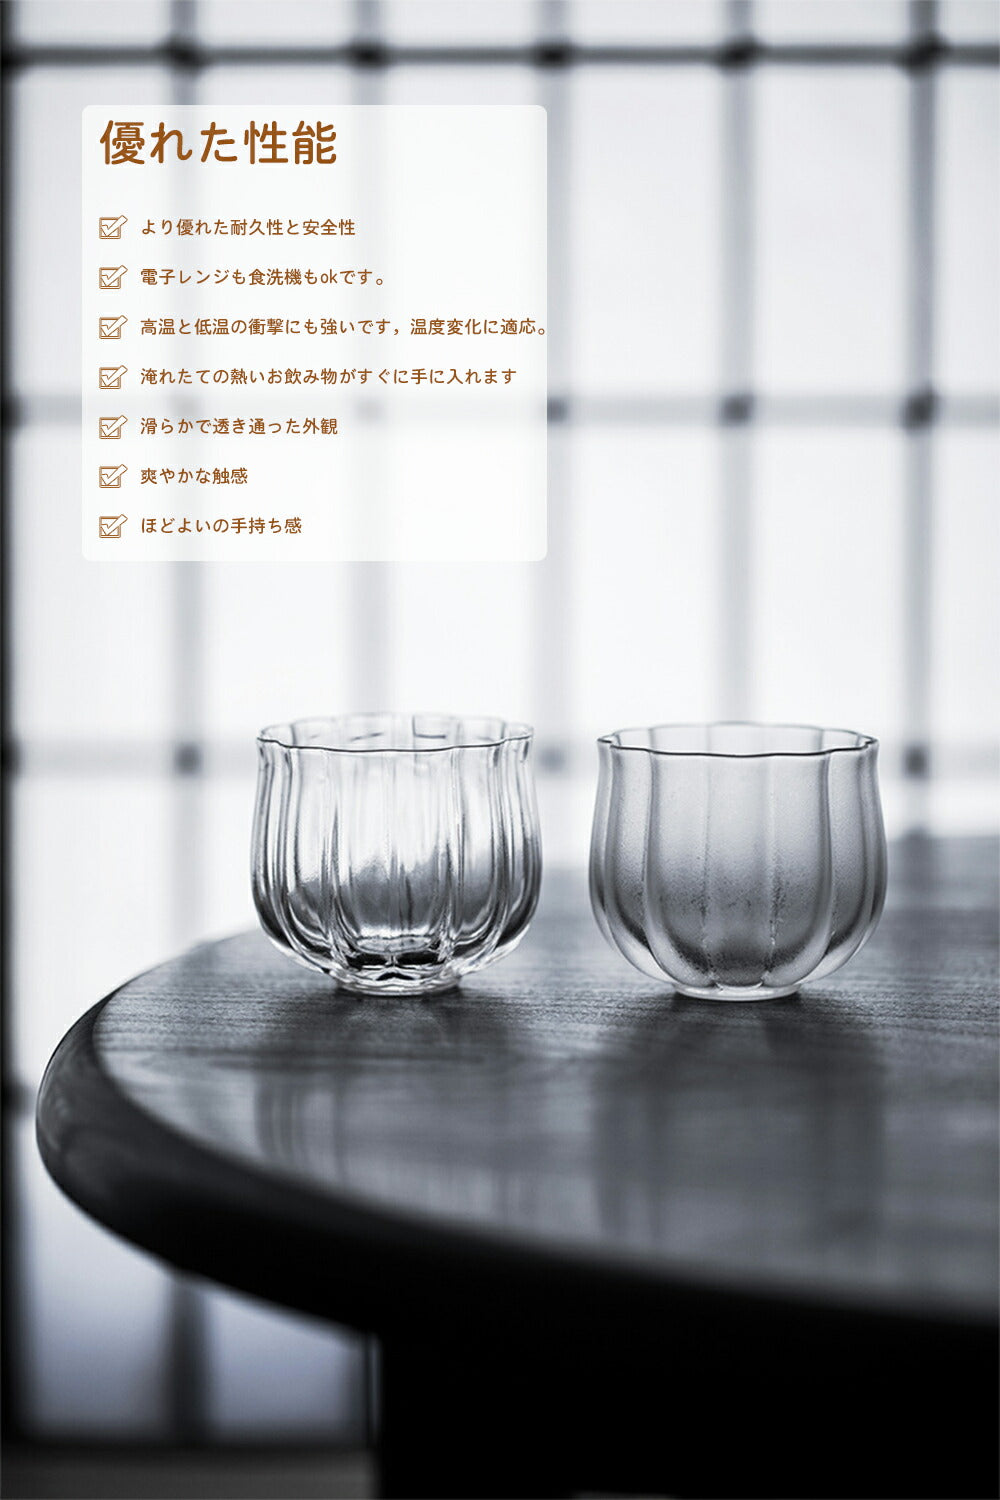 IwaiLoft 耐熱ガラス グラス ガラスコップ ガラスぐいのみ・おちょこ ローグラス 冷茶グラス ティーグラス 結露しにくい 電子レンジ –  茶器・コーヒー用品を選ぶ - IwaiLoft